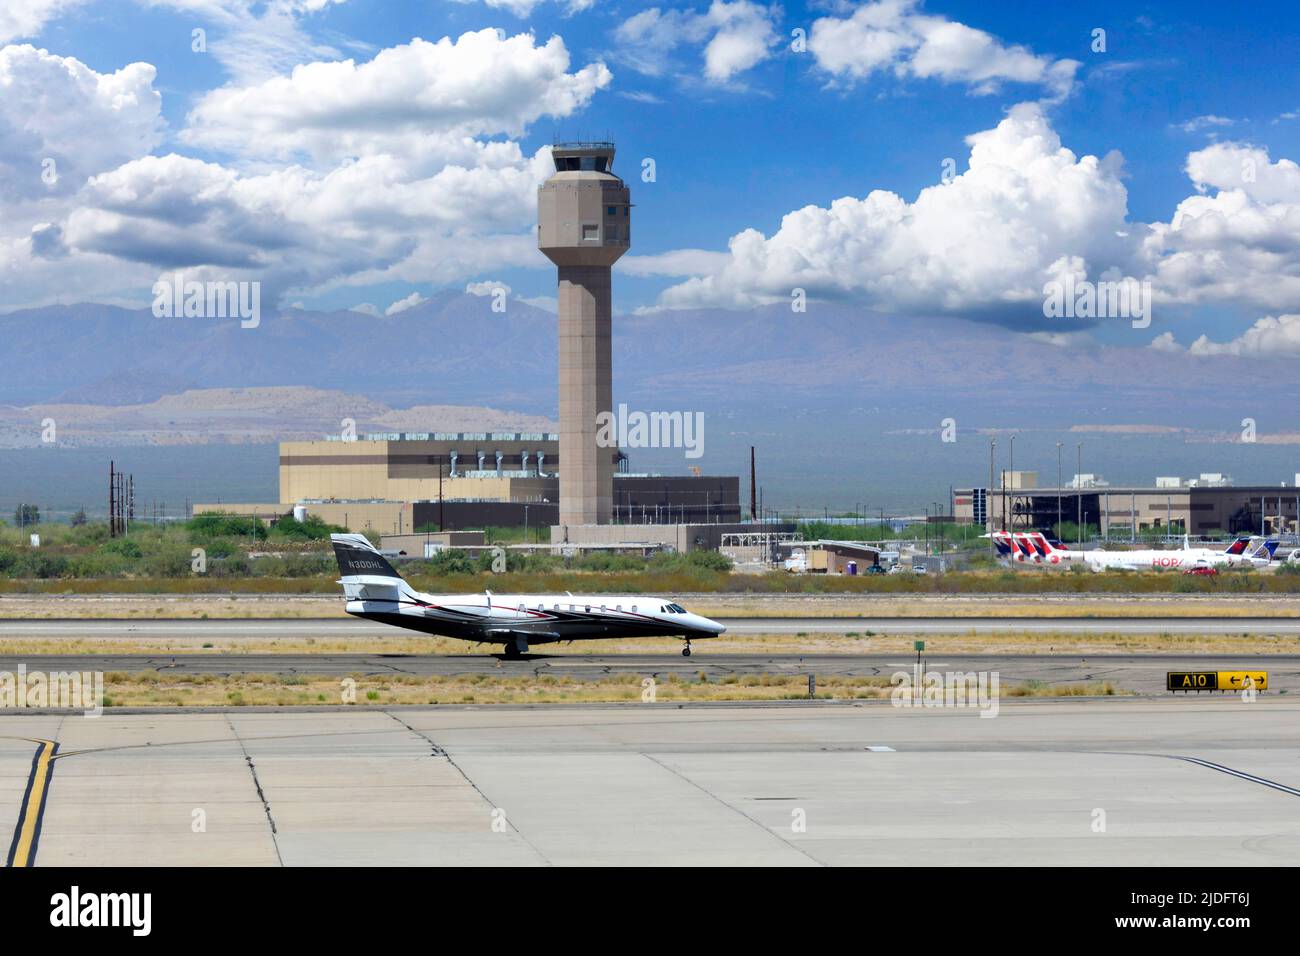 Cessna Citation arrivant à l'aéroport international de Tucson, Arizona Banque D'Images